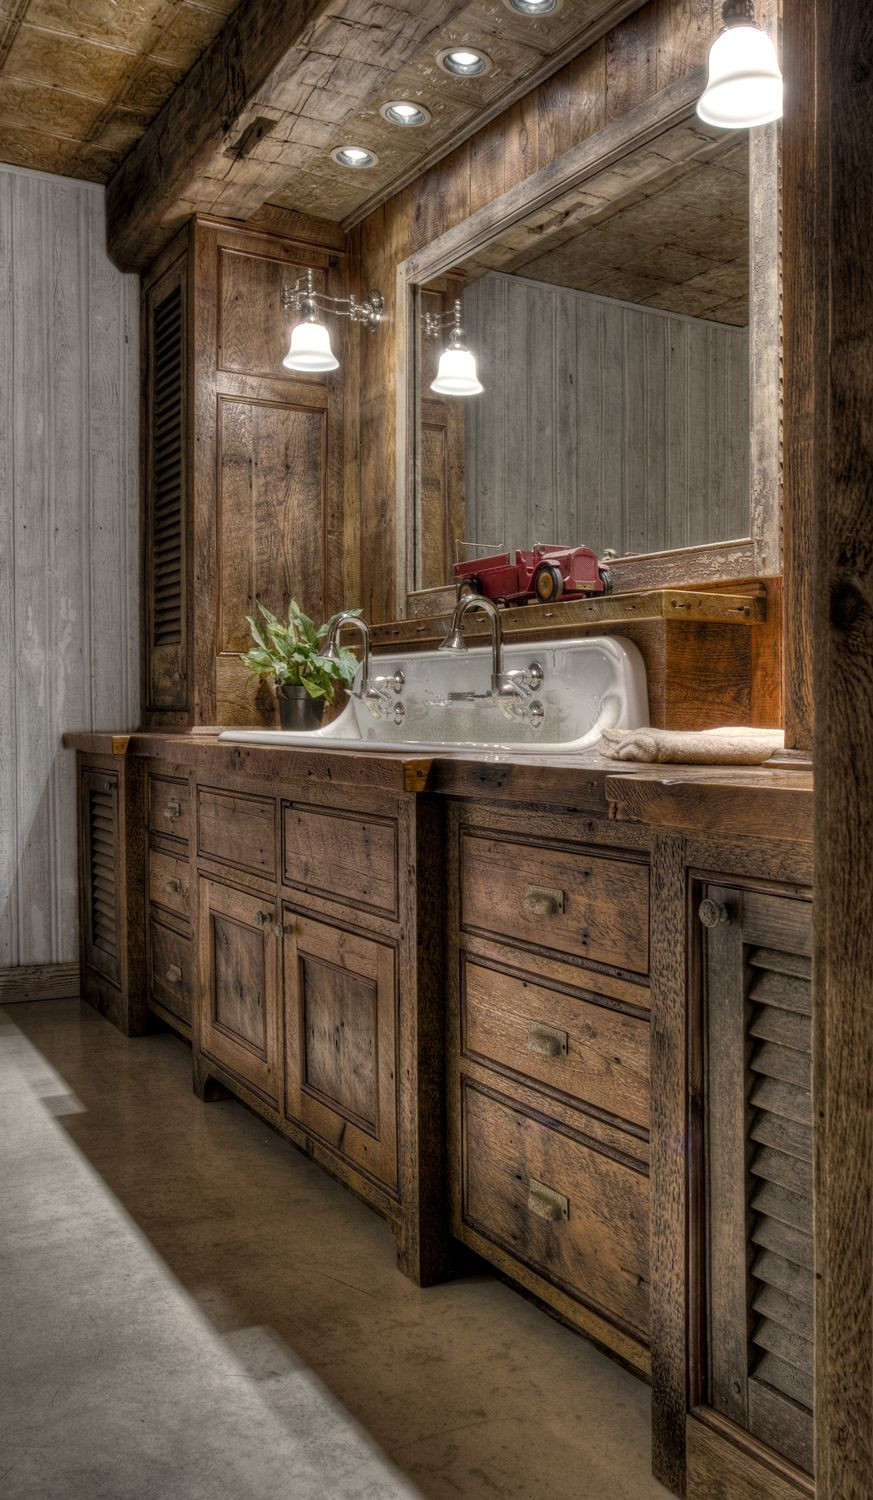 Rustic Bathroom Vanity Cabinets
 30 Best Ideas About Rustic Bathroom Vanities You ll Love